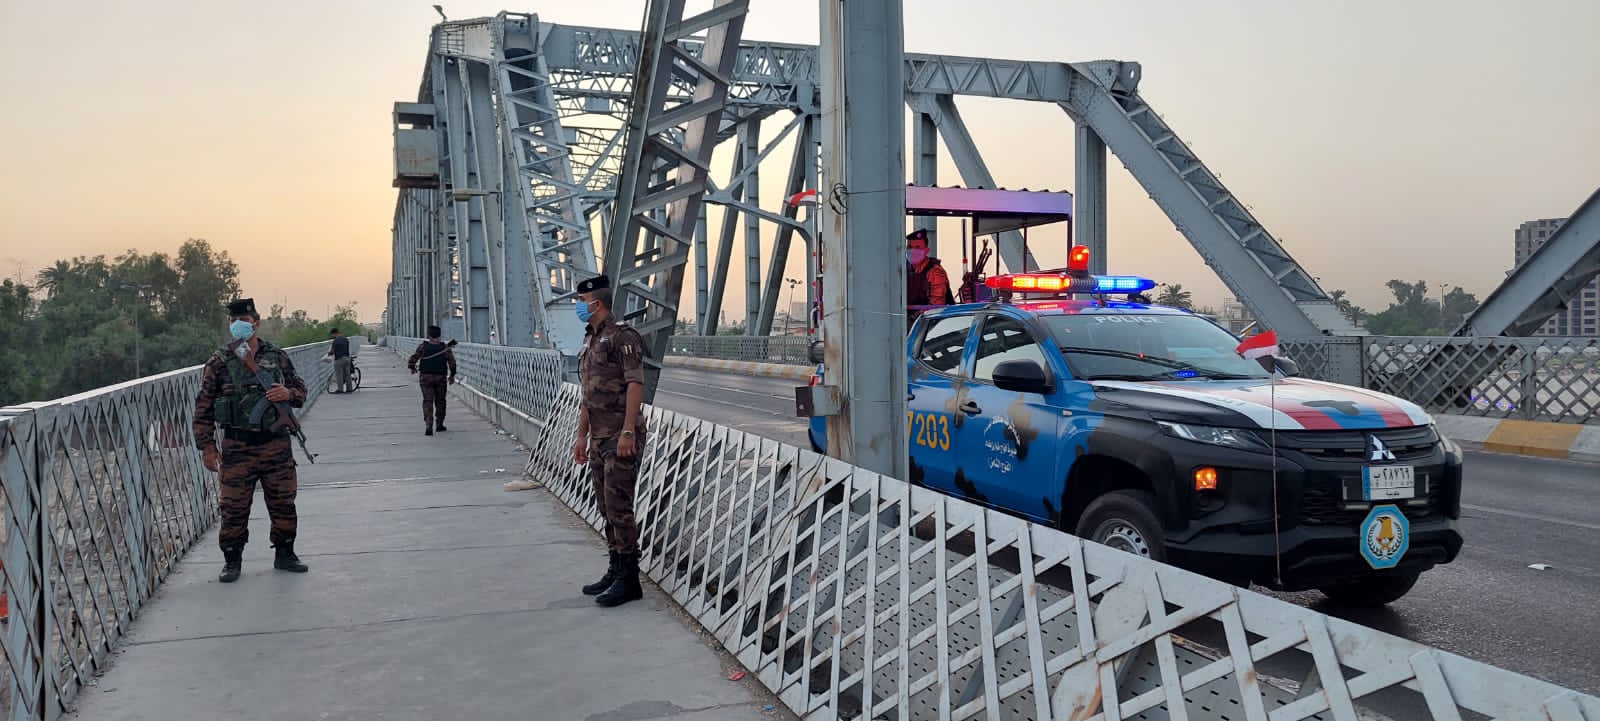 بغداد تنشر دوريات قرب الجسور للحد من محاولات الانتحار